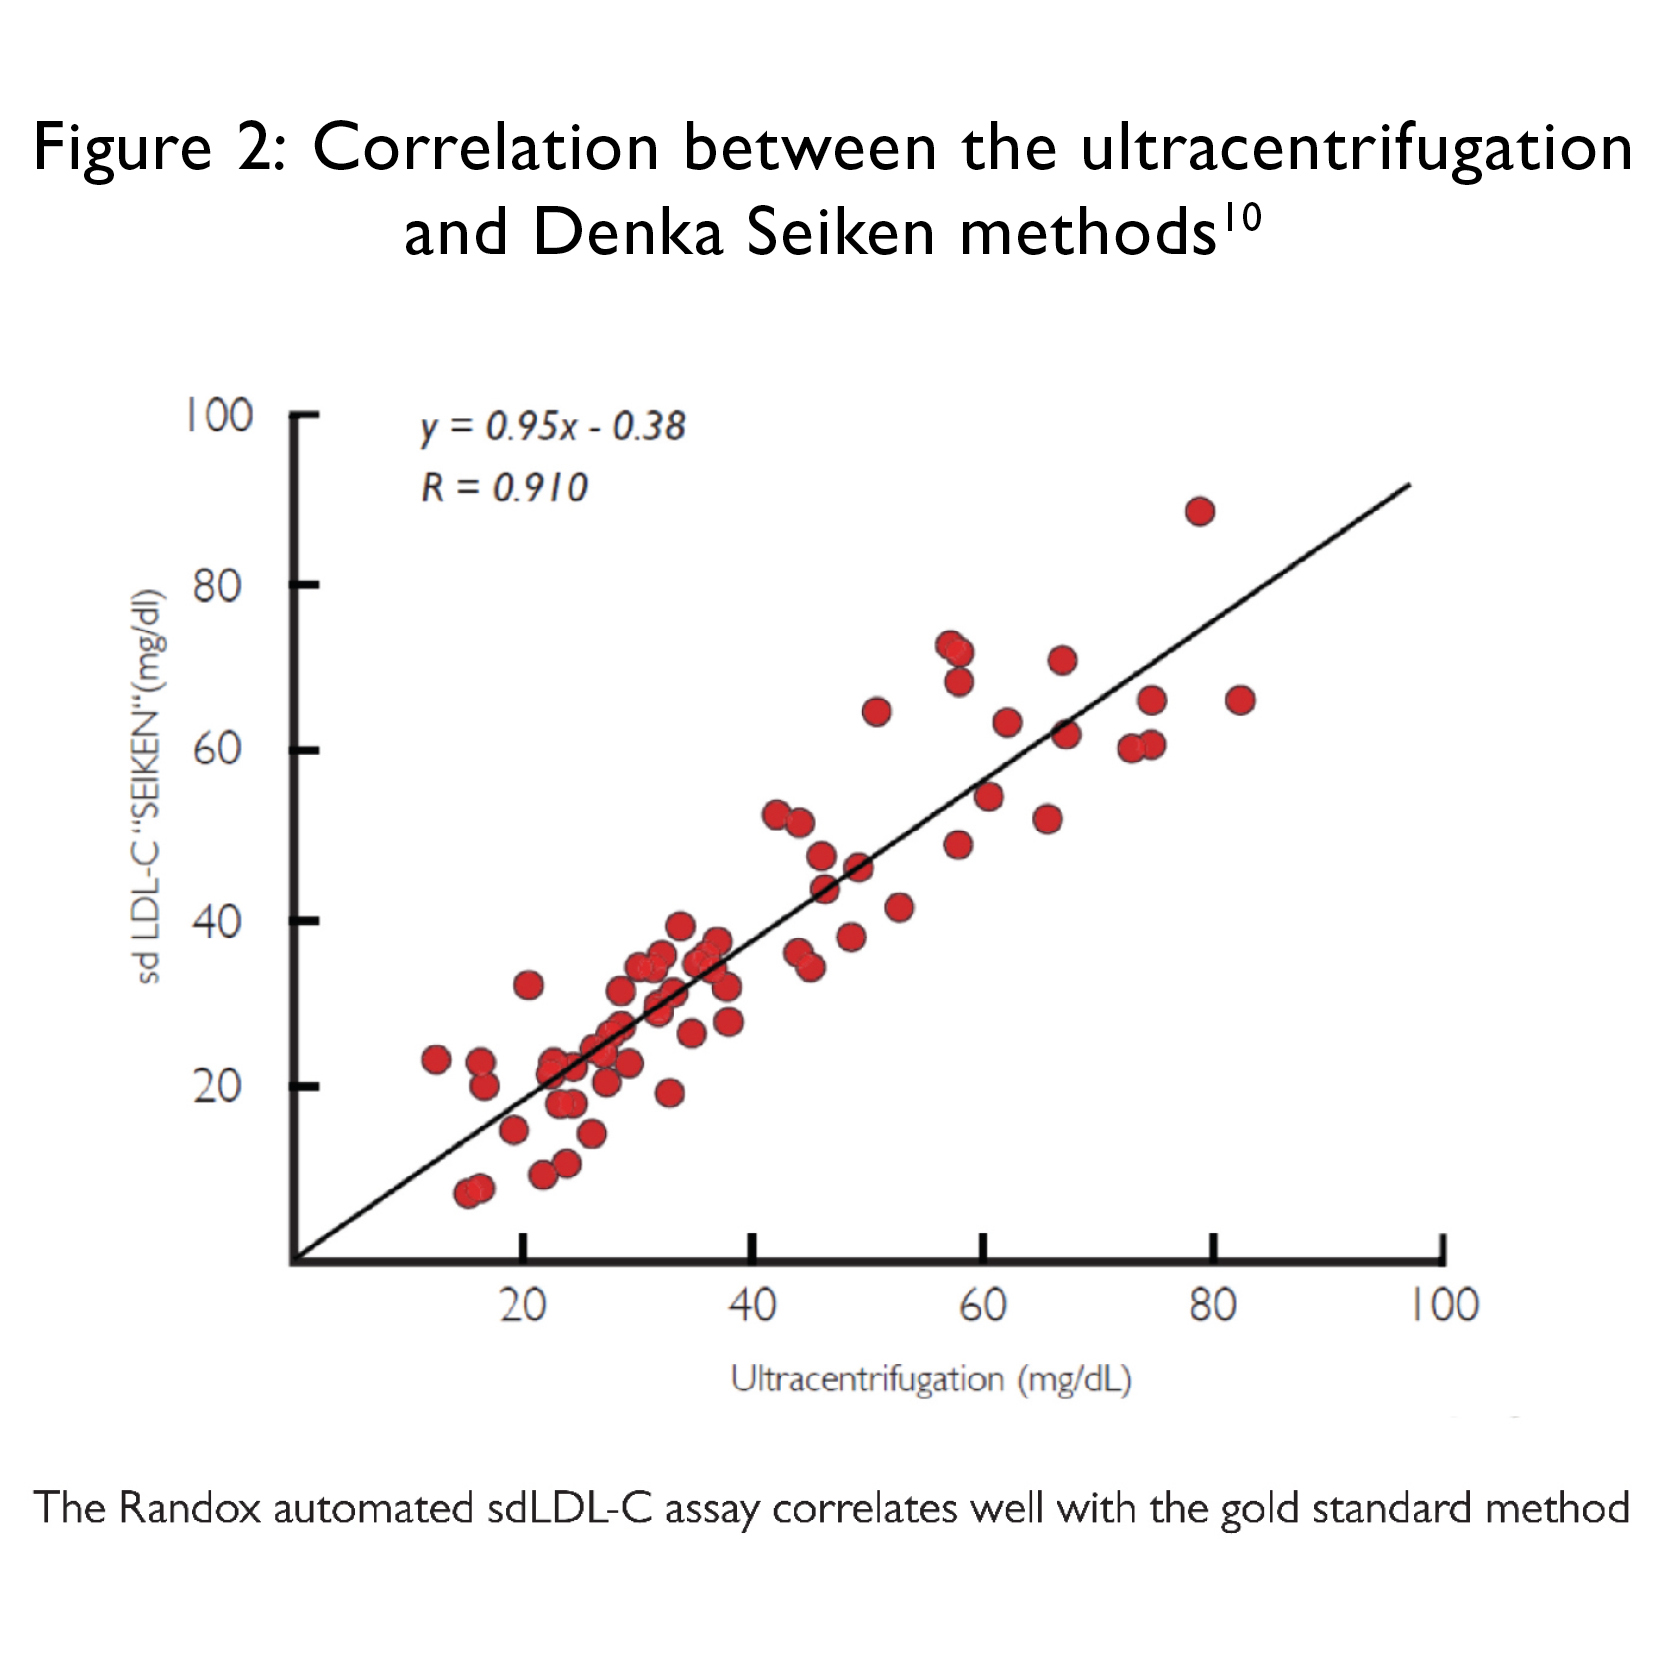 Imagen 2: Correlación entre los métodos de ultracentrifugación y de Denka Seiken (Fotografía cortesía de Randox).